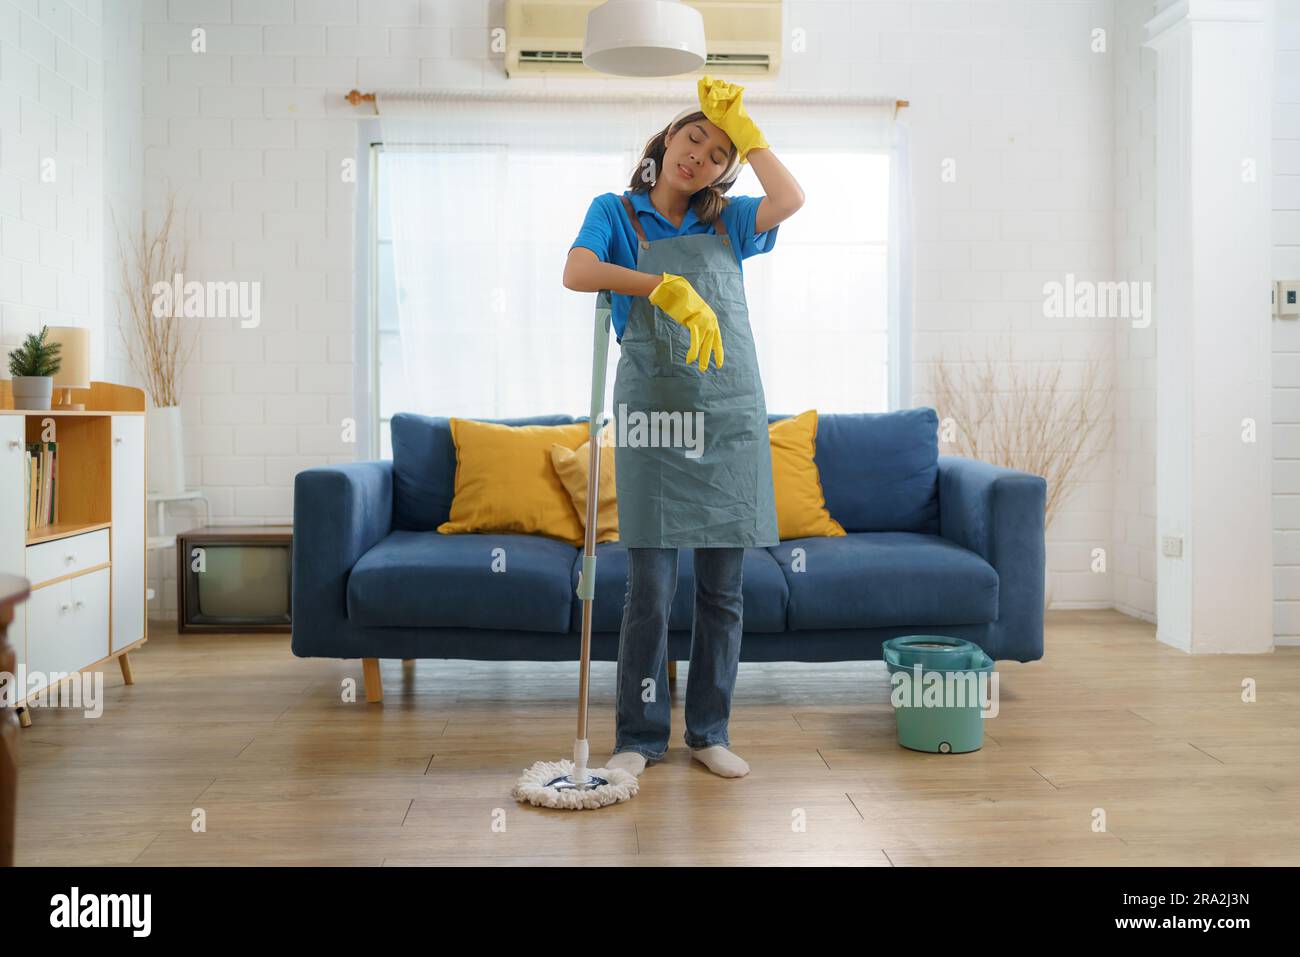 Das erschöpfte asiatische Zimmermädchen kämpft mit Ermüdung, während es das Haus wischte, und zeigt die Herausforderungen und harte Arbeit hinter dem Haus Stockfoto